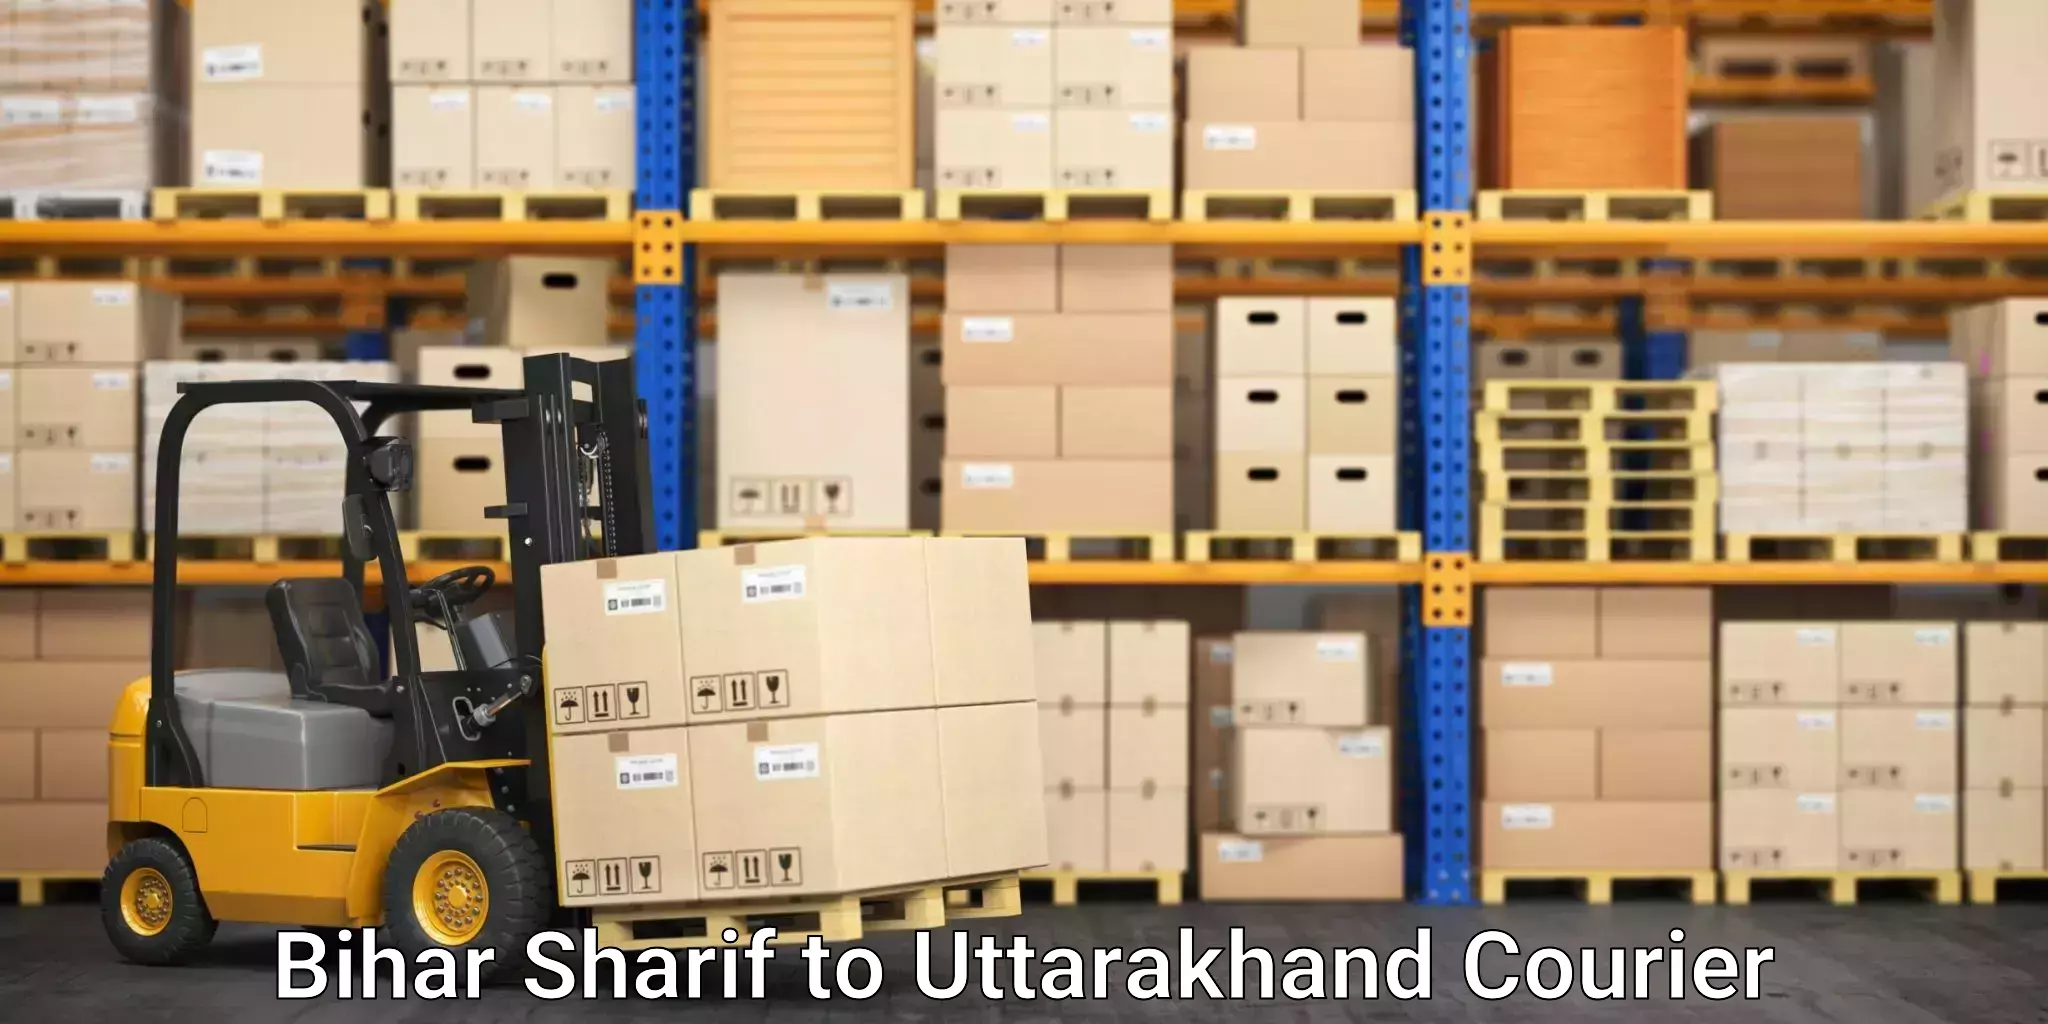 Moving and storage services Bihar Sharif to Nainital